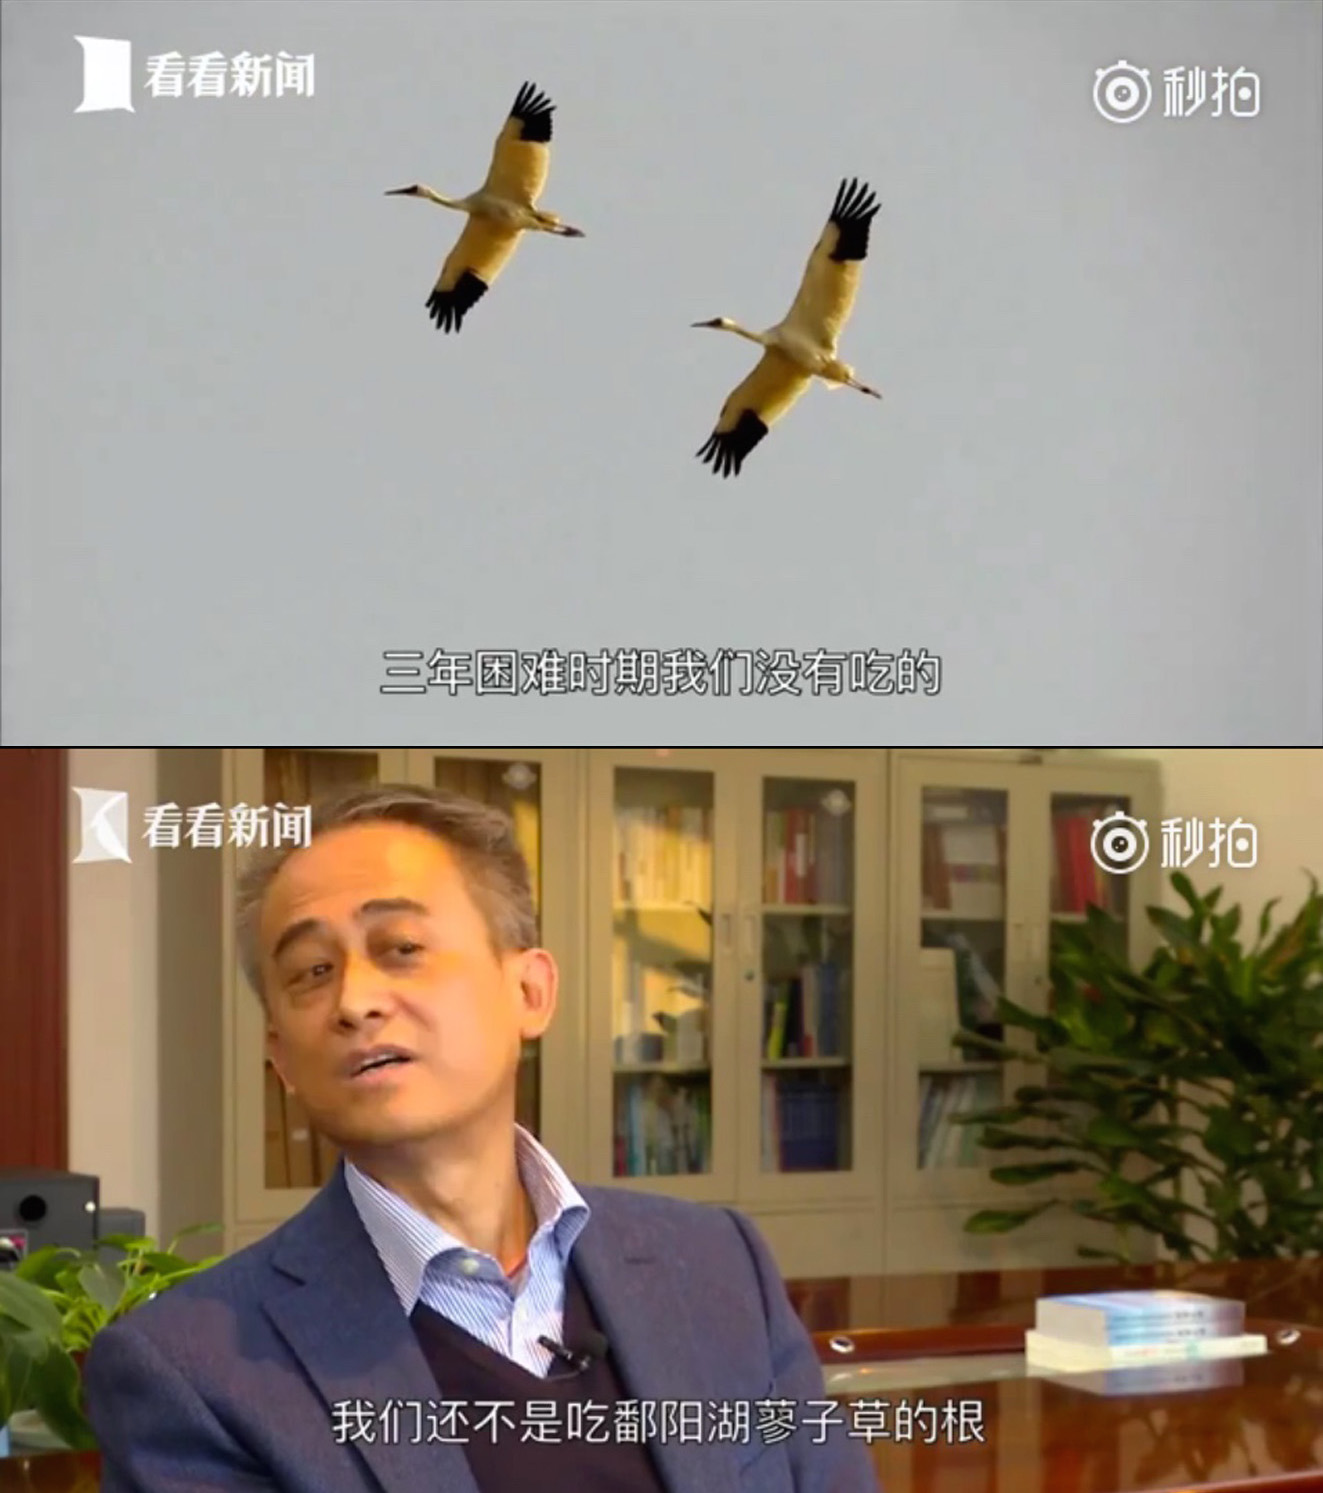 【网络民议】中国官员连鸟类进化也管起来了